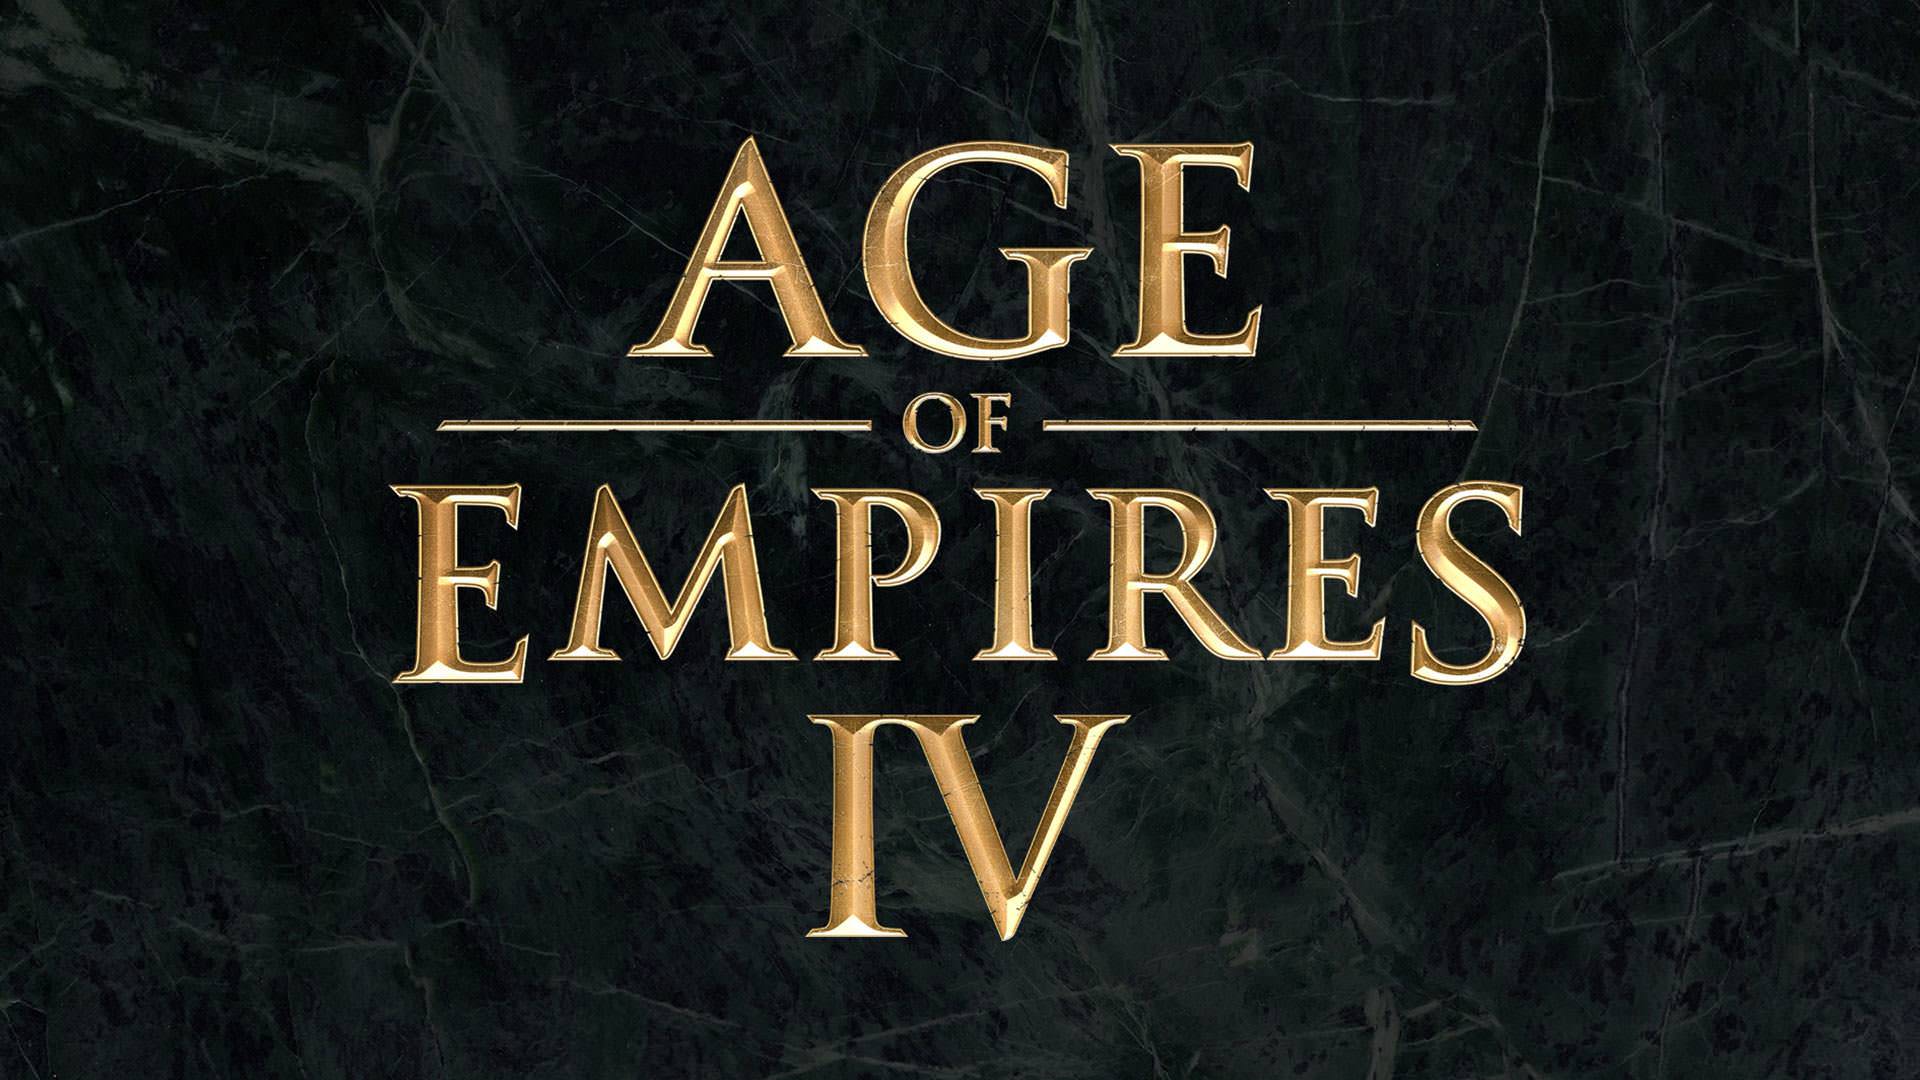 لوگو بازی Age of Empires 4 با رنگ طلایی روی بک گراند مشکی